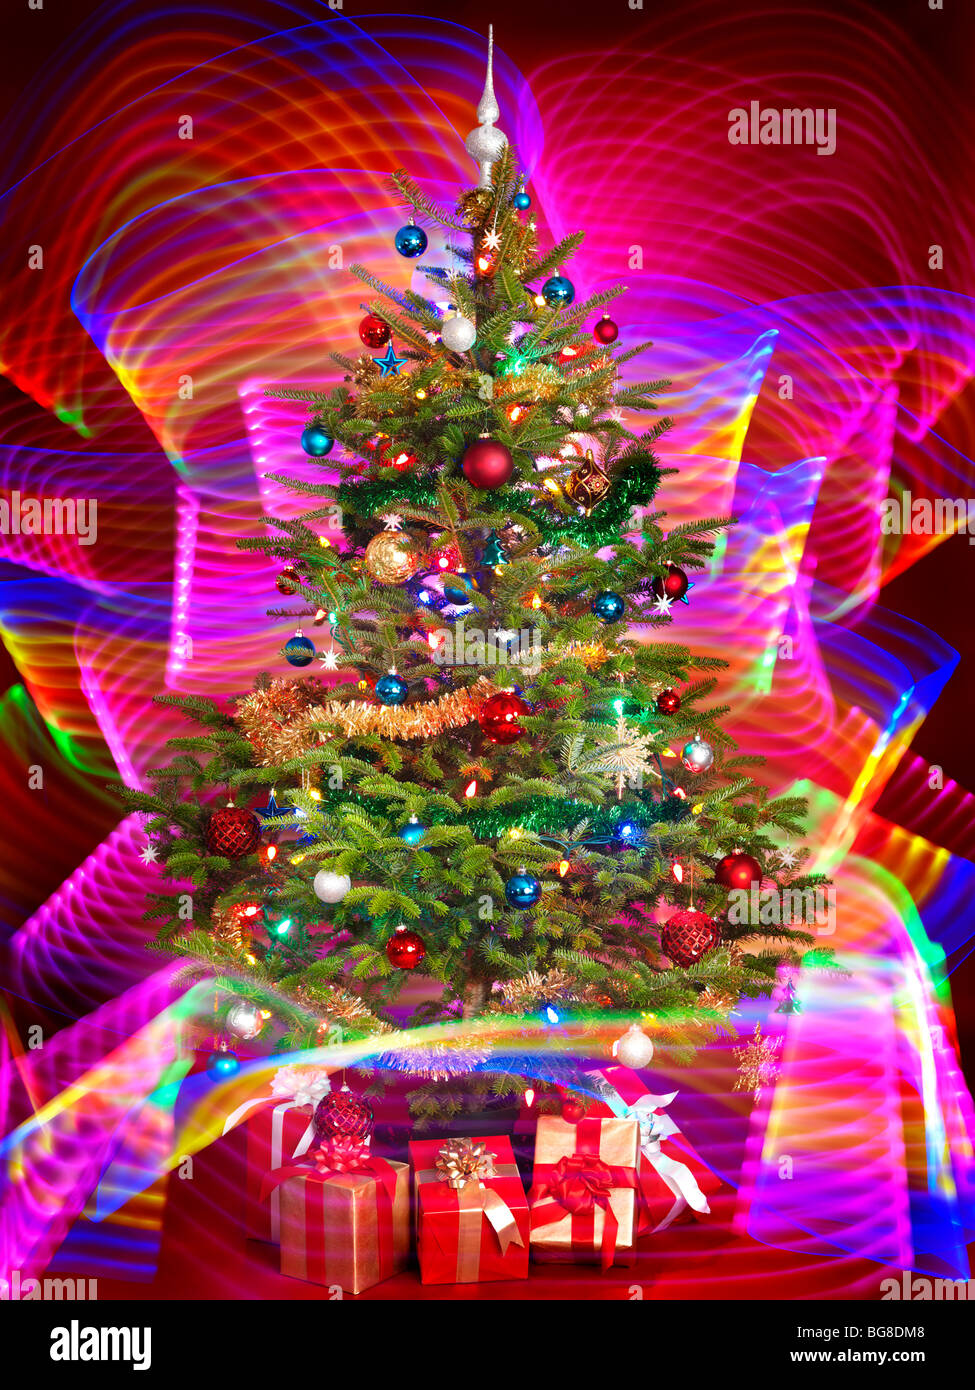 Albero di Natale decorato con viola gli effetti di illuminazione intorno ad esso Foto Stock